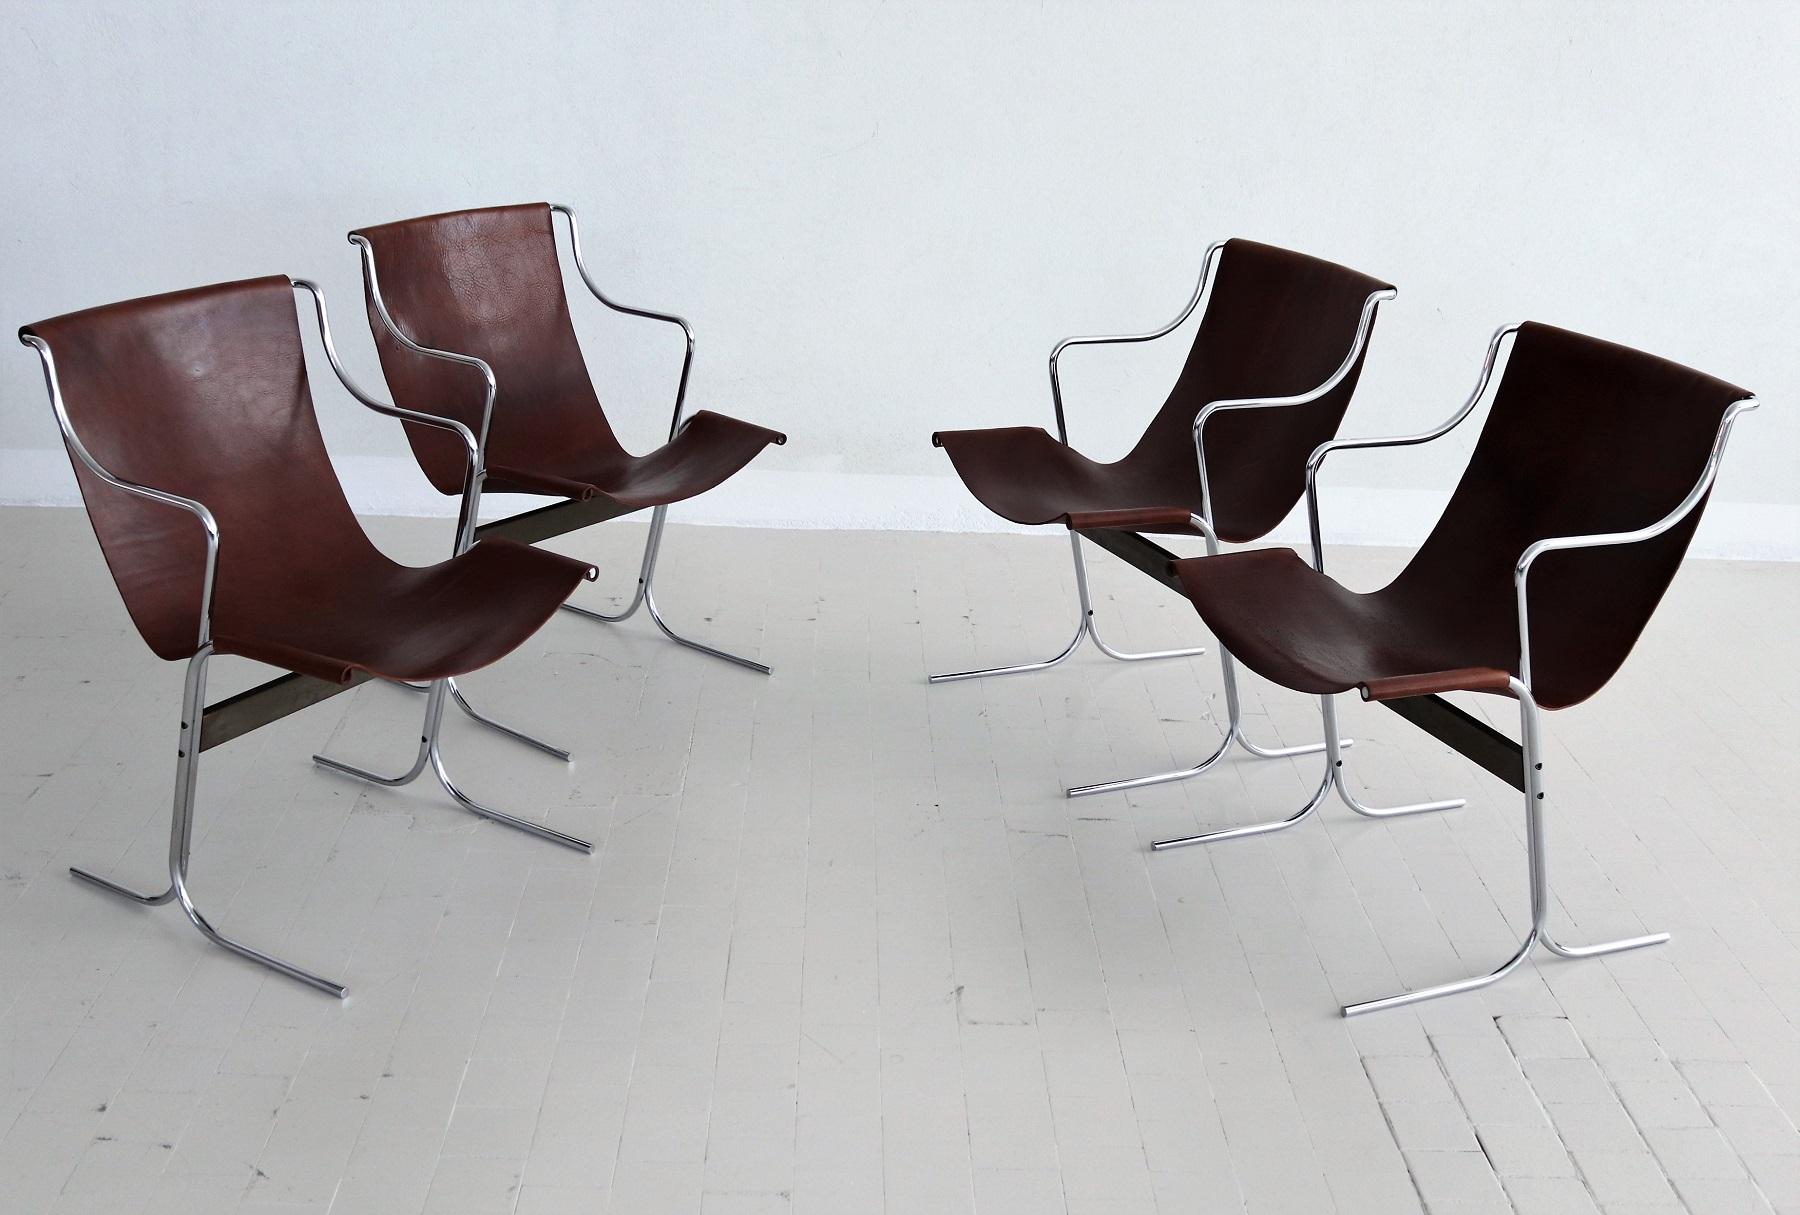 Ensemble de quatre chaises de salon conçues par Ross Littell et fabriquées par ICF De Padova, Milan (vers les années 1960).
Les chaises longues sont de style minimaliste. 
En très bon état vintage le cuir marron foncé fait à la main, tandis que